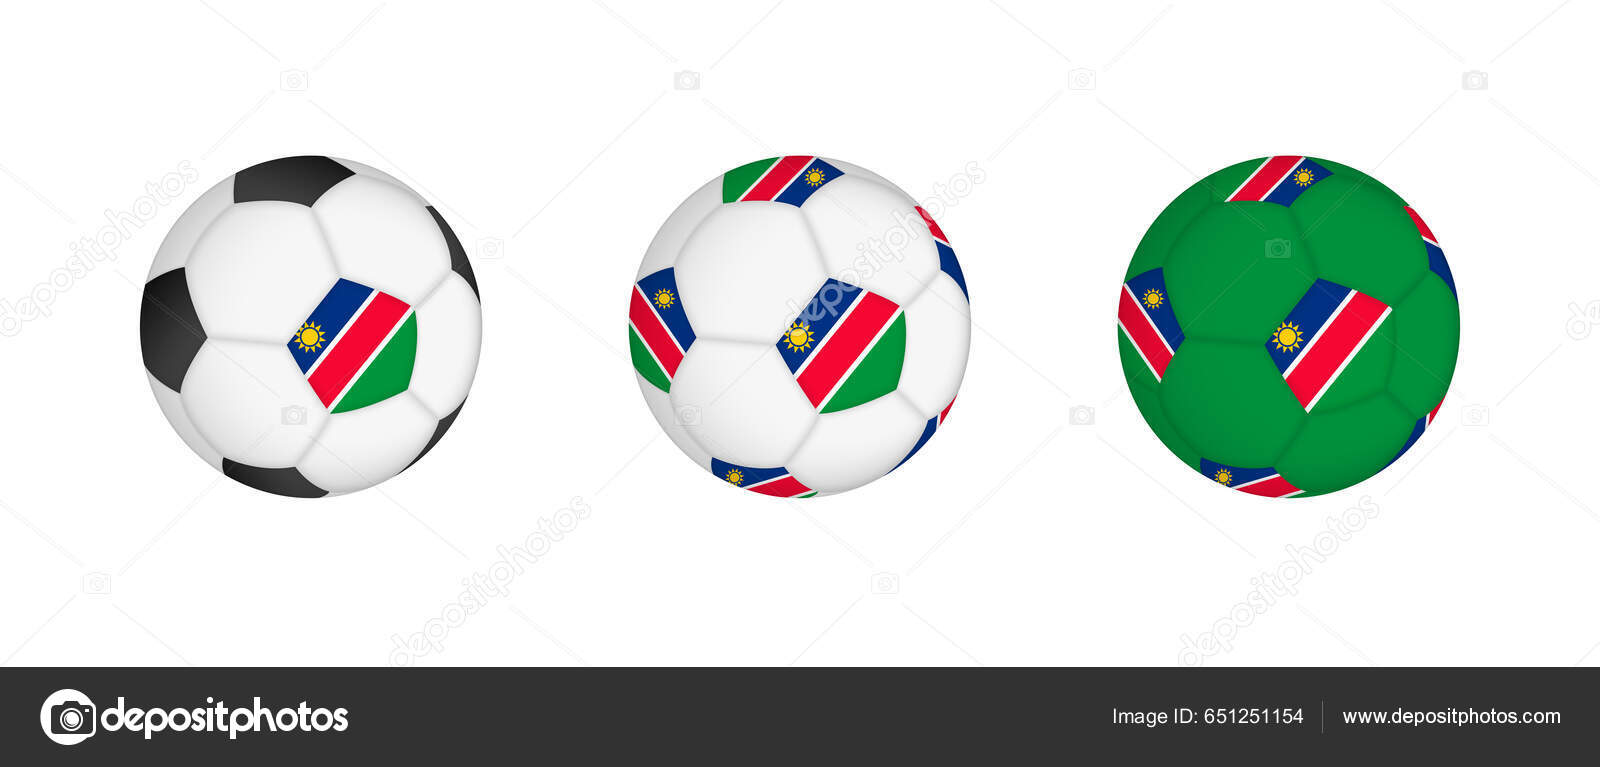 Coleção de bolas esportivas ilustração vetorial de bolas de todos